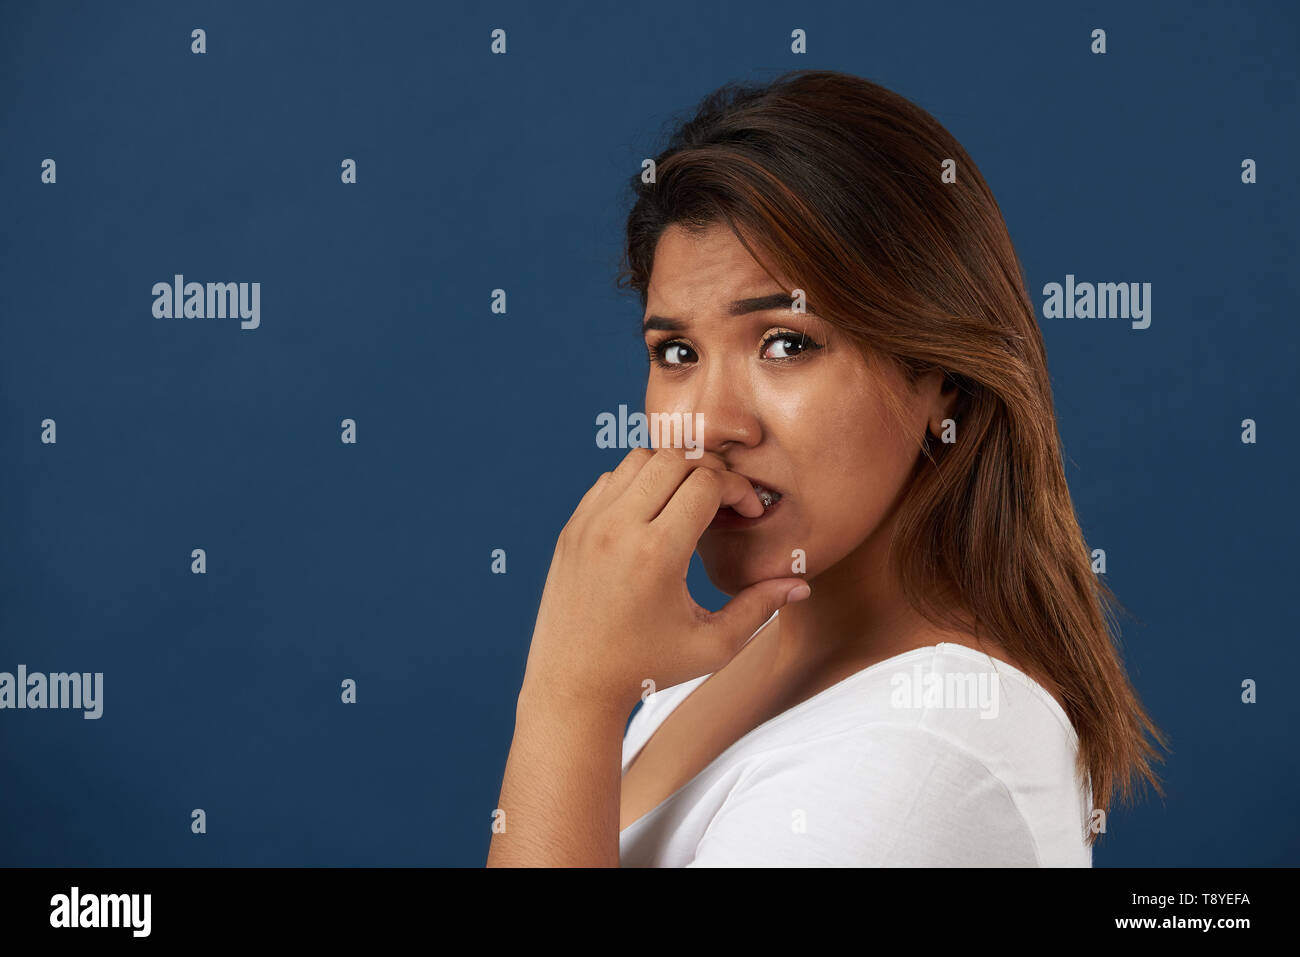 Junge Frau essen ihre Nägel Portrait auf blauem Hintergrund isoliert Stockfoto